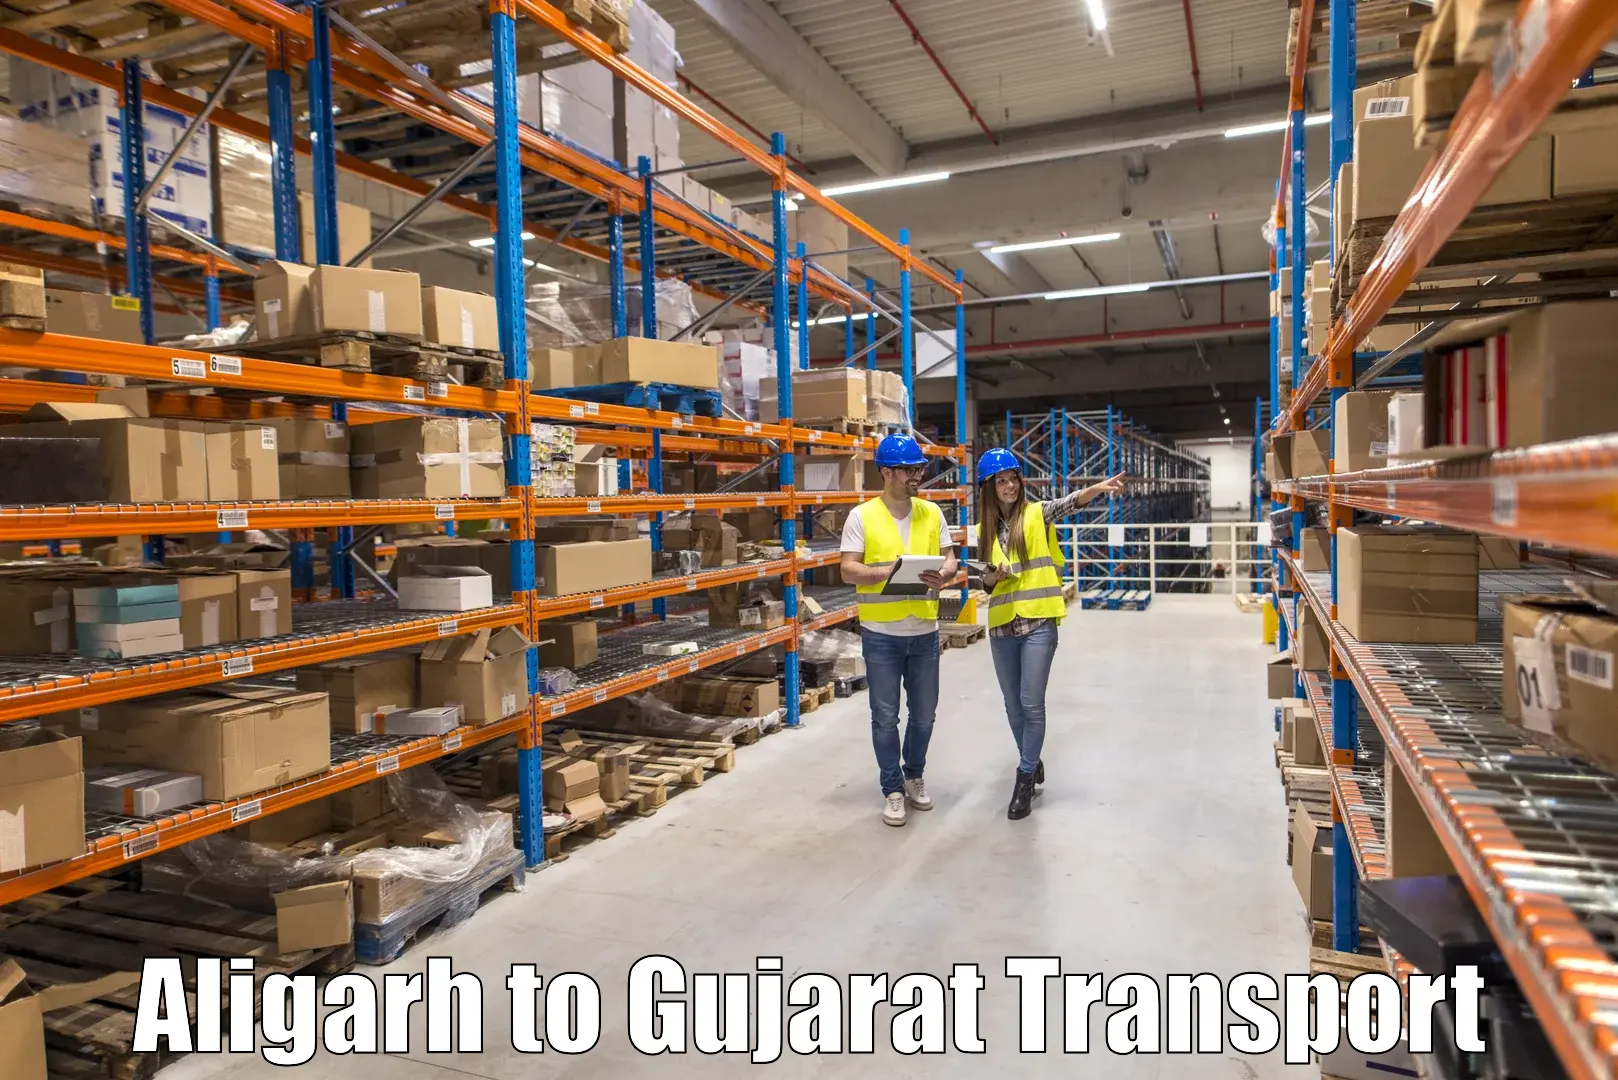 Cargo train transport services Aligarh to Kachchh